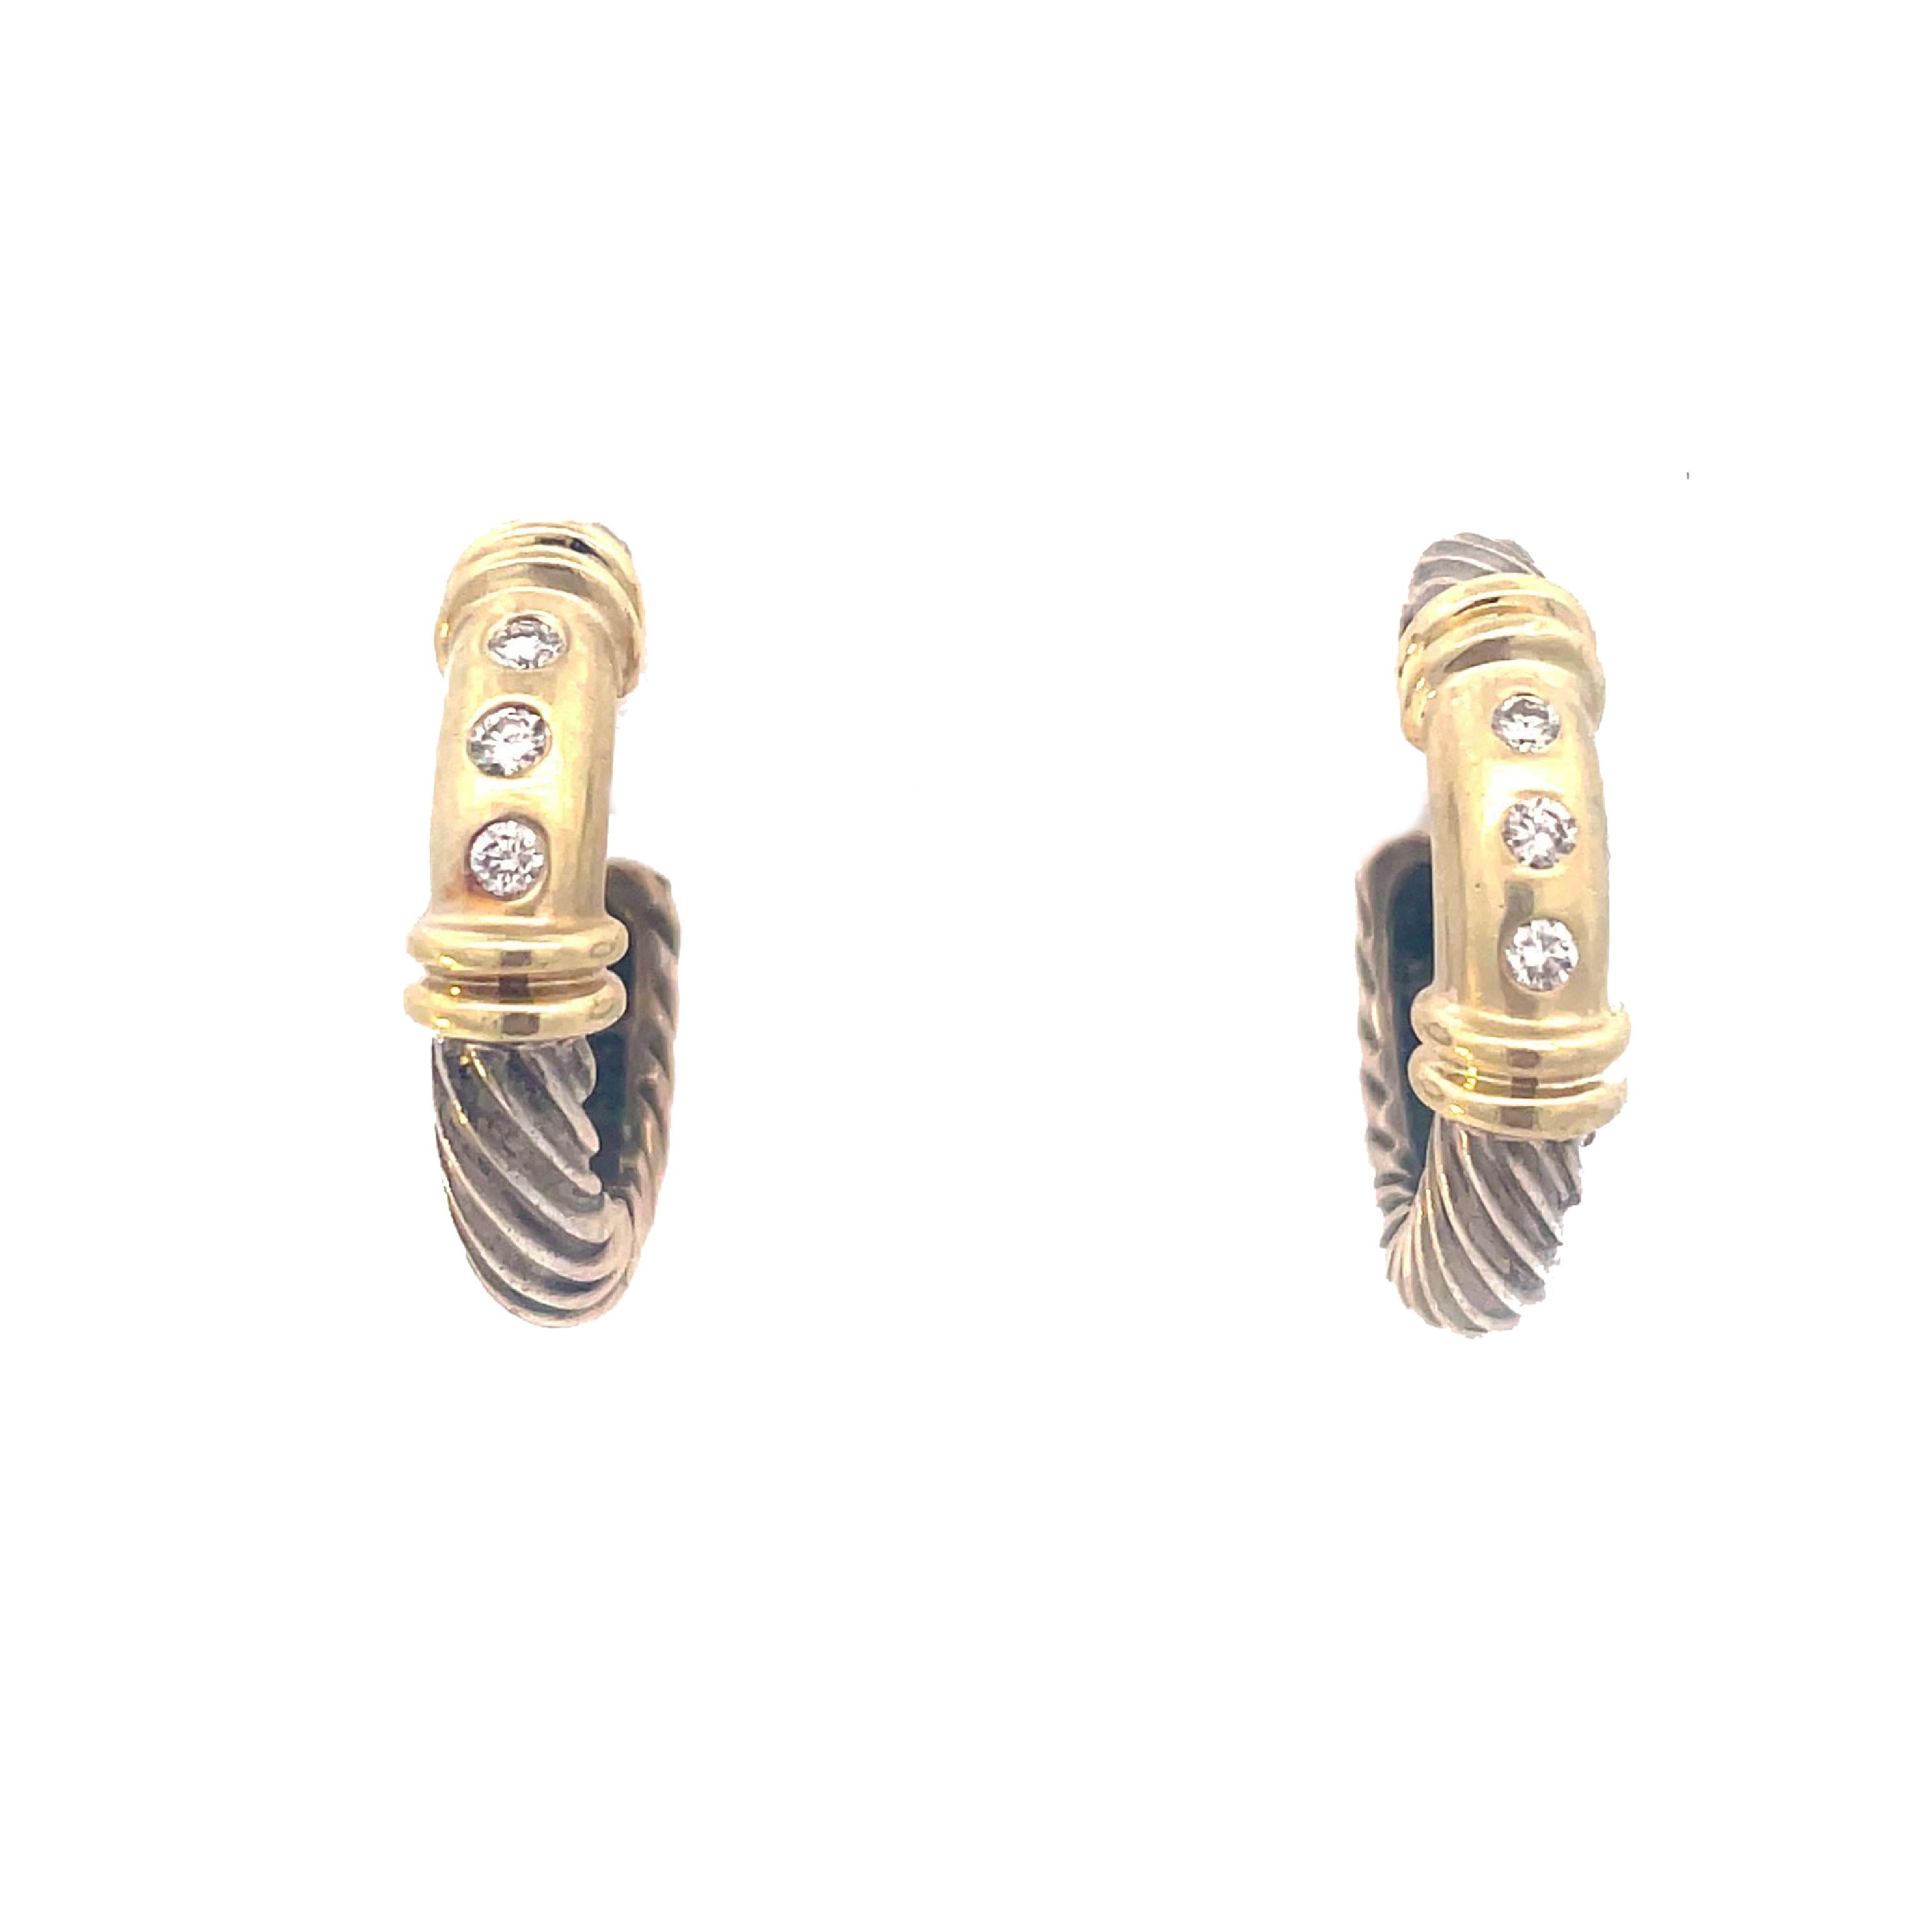 Il s'agit d'une paire classique de boucles d'oreilles David Yurman en argent sterling et or jaune 14 carats, qui présente le fameux design de la corde torsadée et est ornée de trois diamants ronds étincelants sur chaque boucle d'oreille. Ces boucles